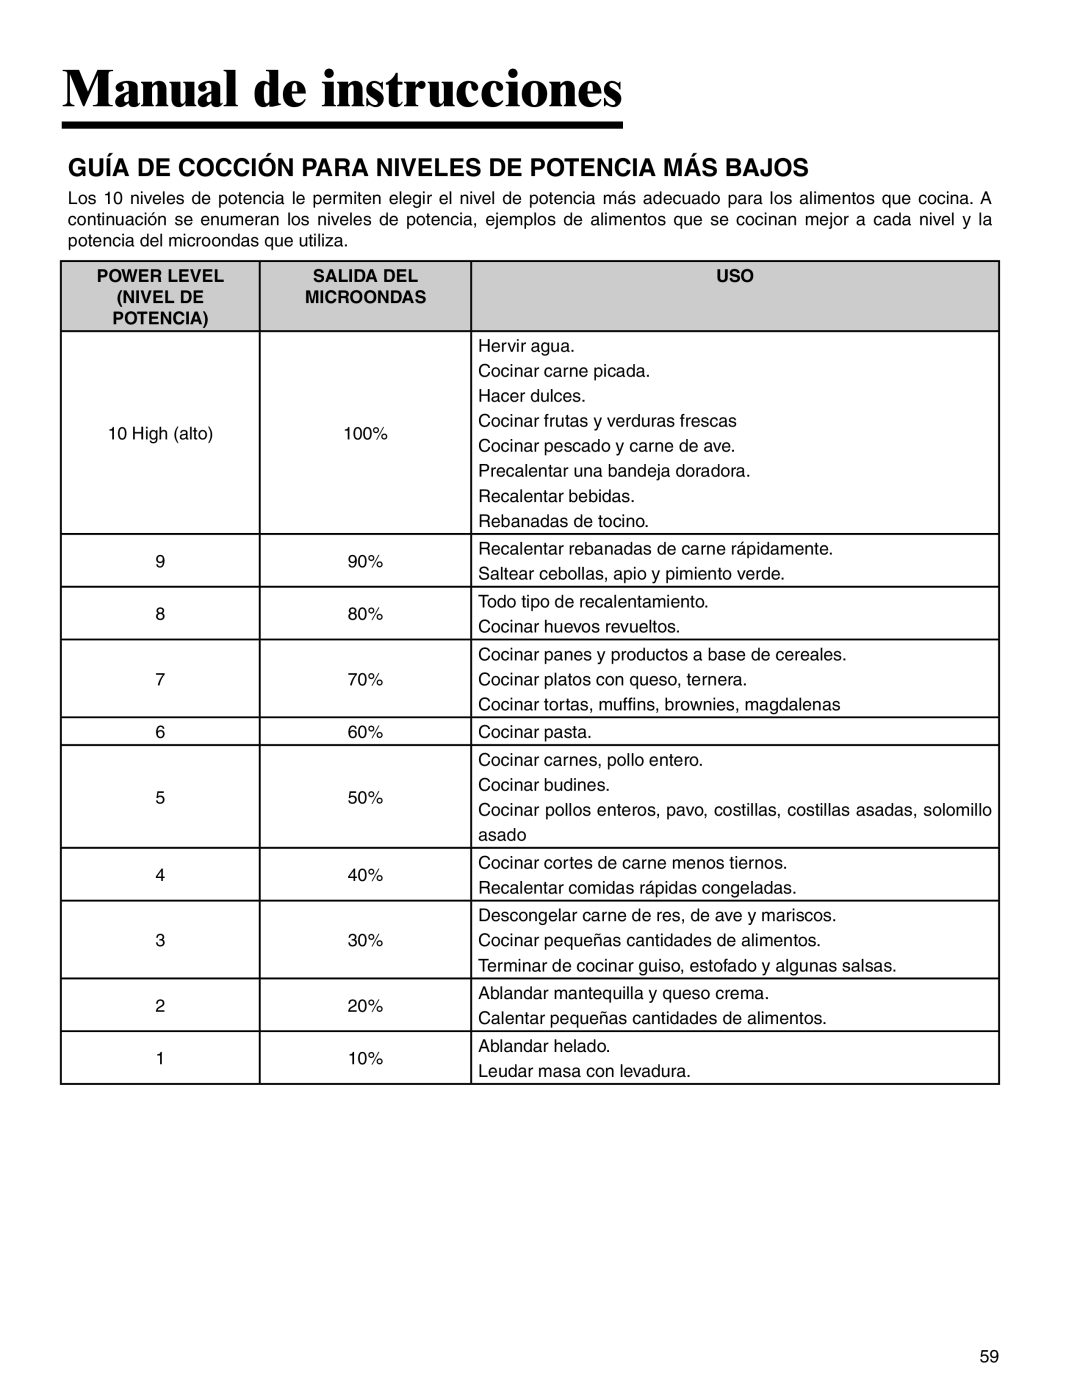 Amana AMC2206BA important safety instructions Guía De Cocción Para Niveles De Potencia Más Bajos, Manual de instrucciones 